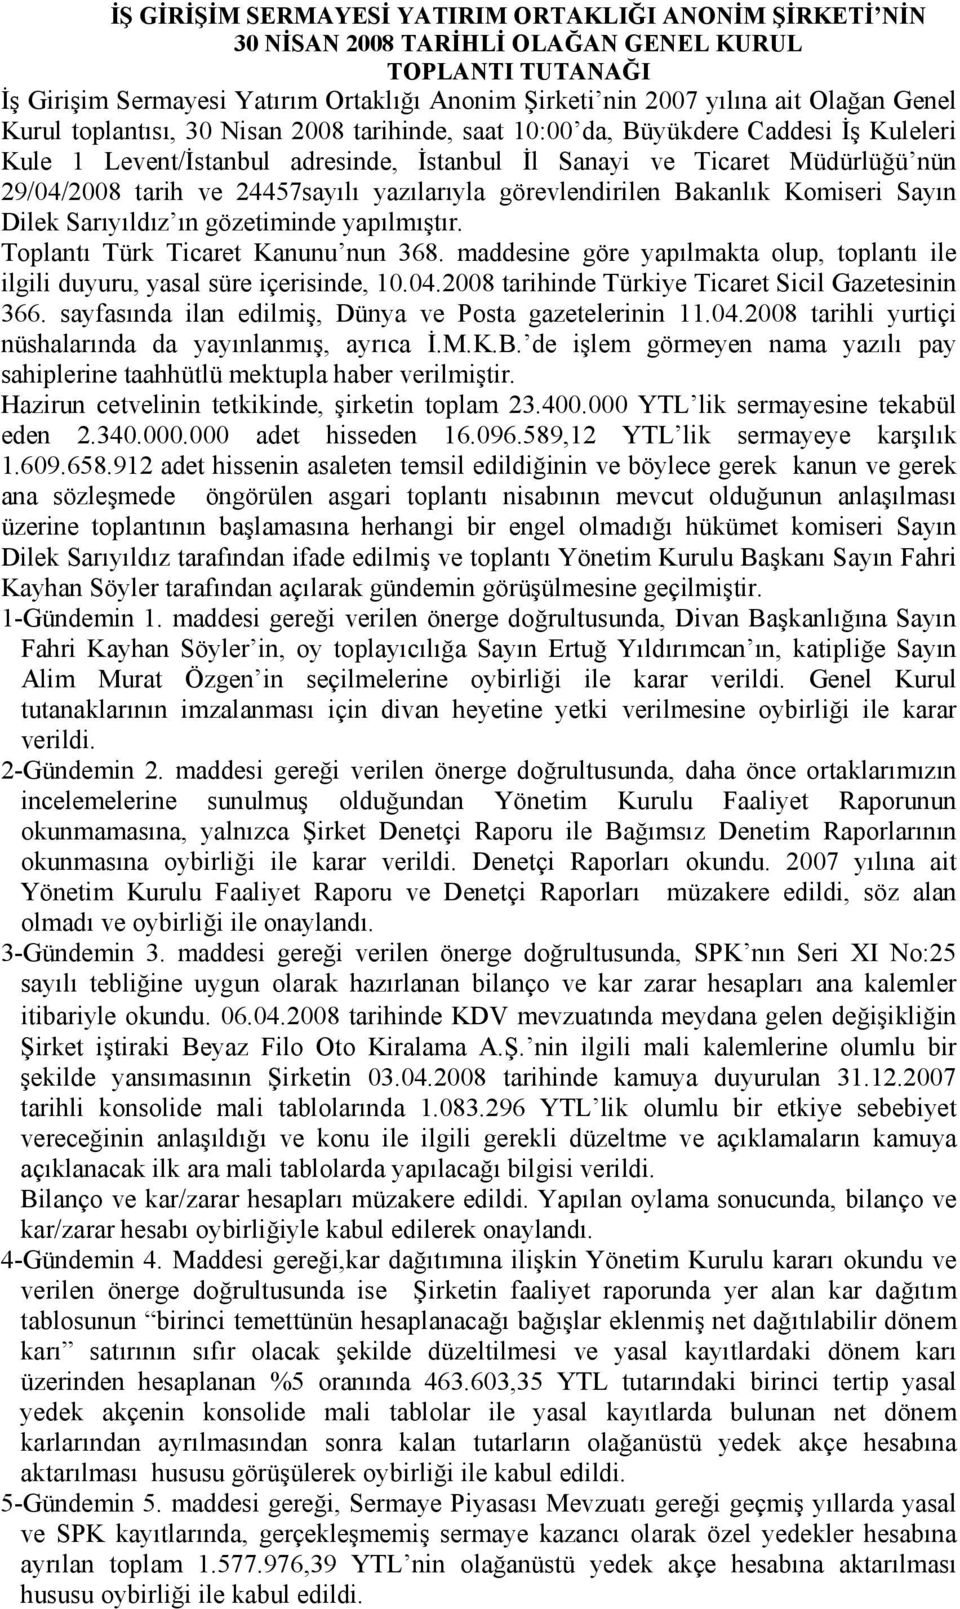 24457sayılı yazılarıyla görevlendirilen Bakanlık Komiseri Sayın Dilek Sarıyıldız ın gözetiminde yapılmıştır. Toplantı Türk Ticaret Kanunu nun 368.